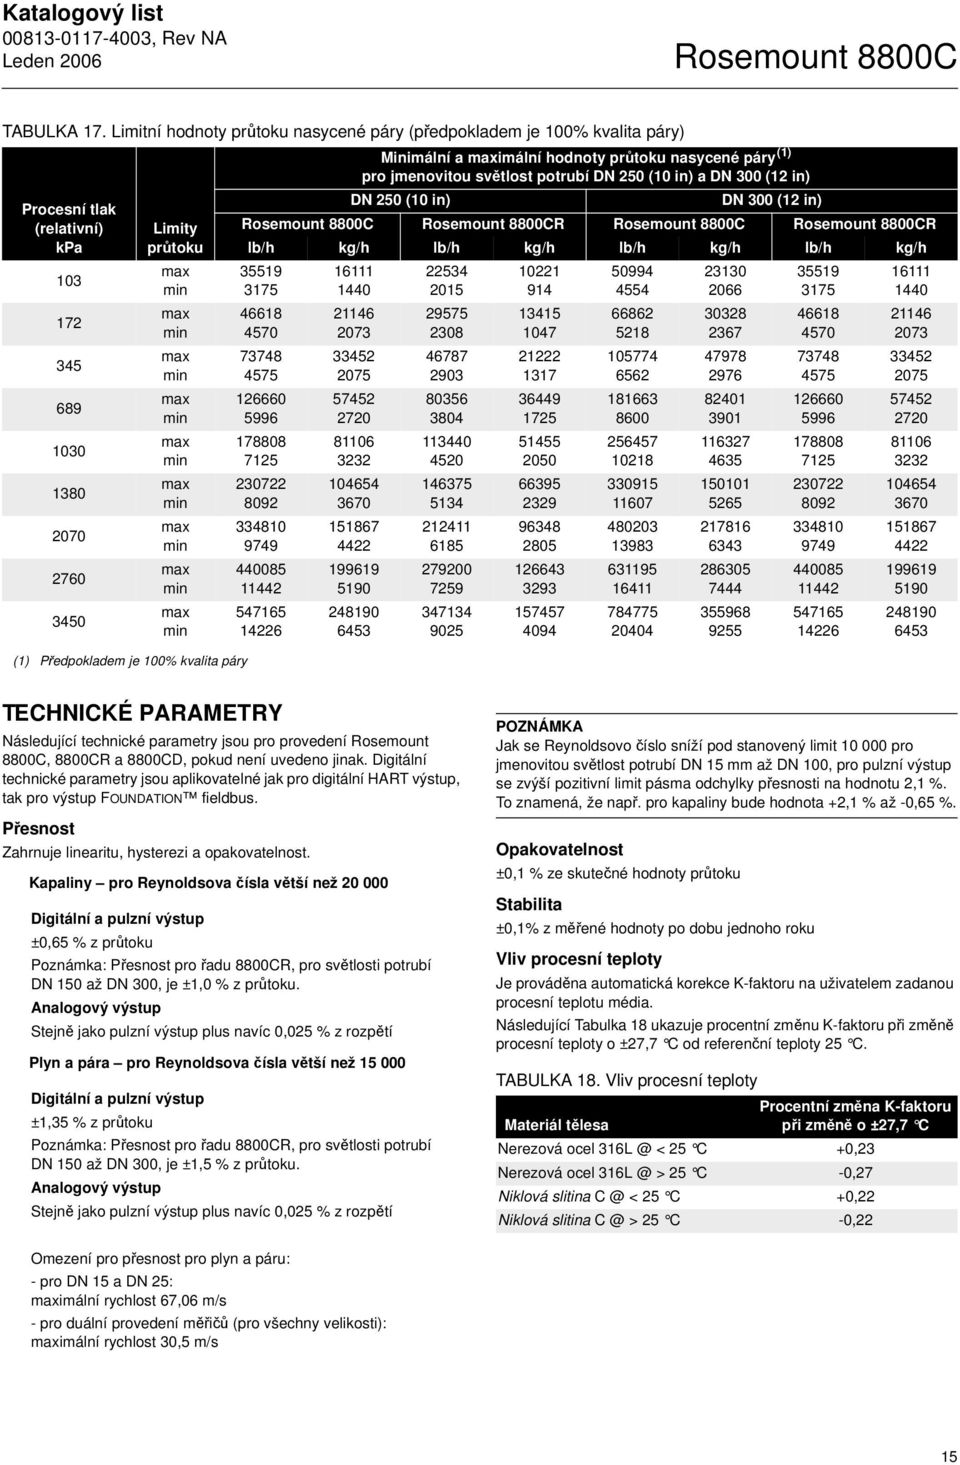 Minimální a imální hodnoty průtoku nasycené páry (1) pro jmenovitou světlost potrubí DN 250 (10 in) a DN 300 (12 in) DN 250 (10 in) DN 300 (12 in) Rosemount 8800C Rosemount 8800CR Rosemount 8800C